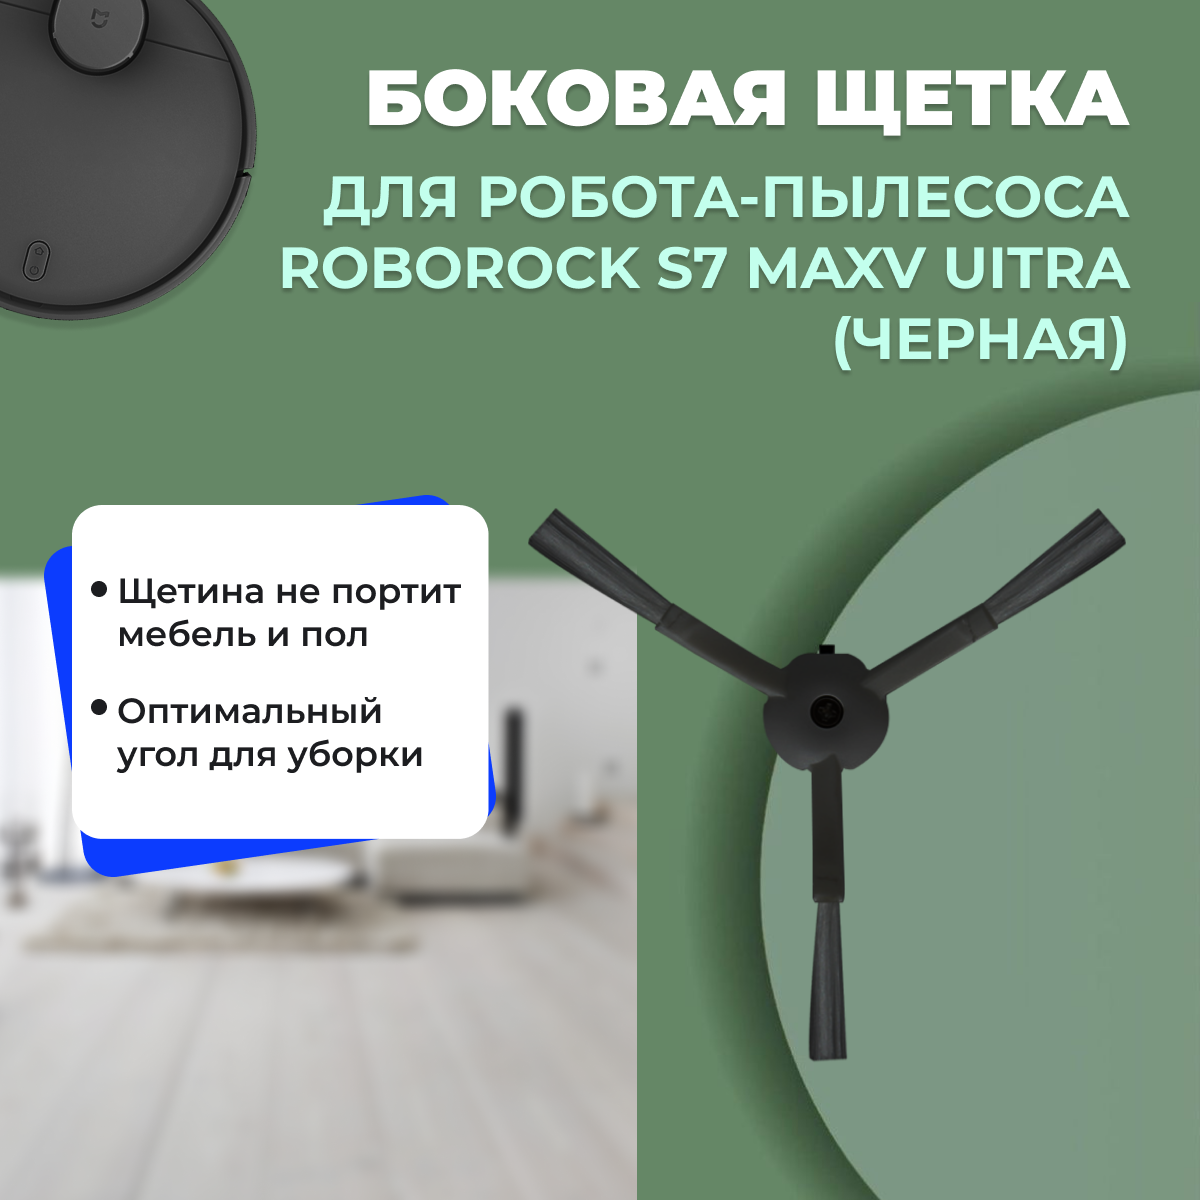 Боковая щетка для робота-пылесоса  Roborock S7 MaxV Ultra, черная 558197, фото 1